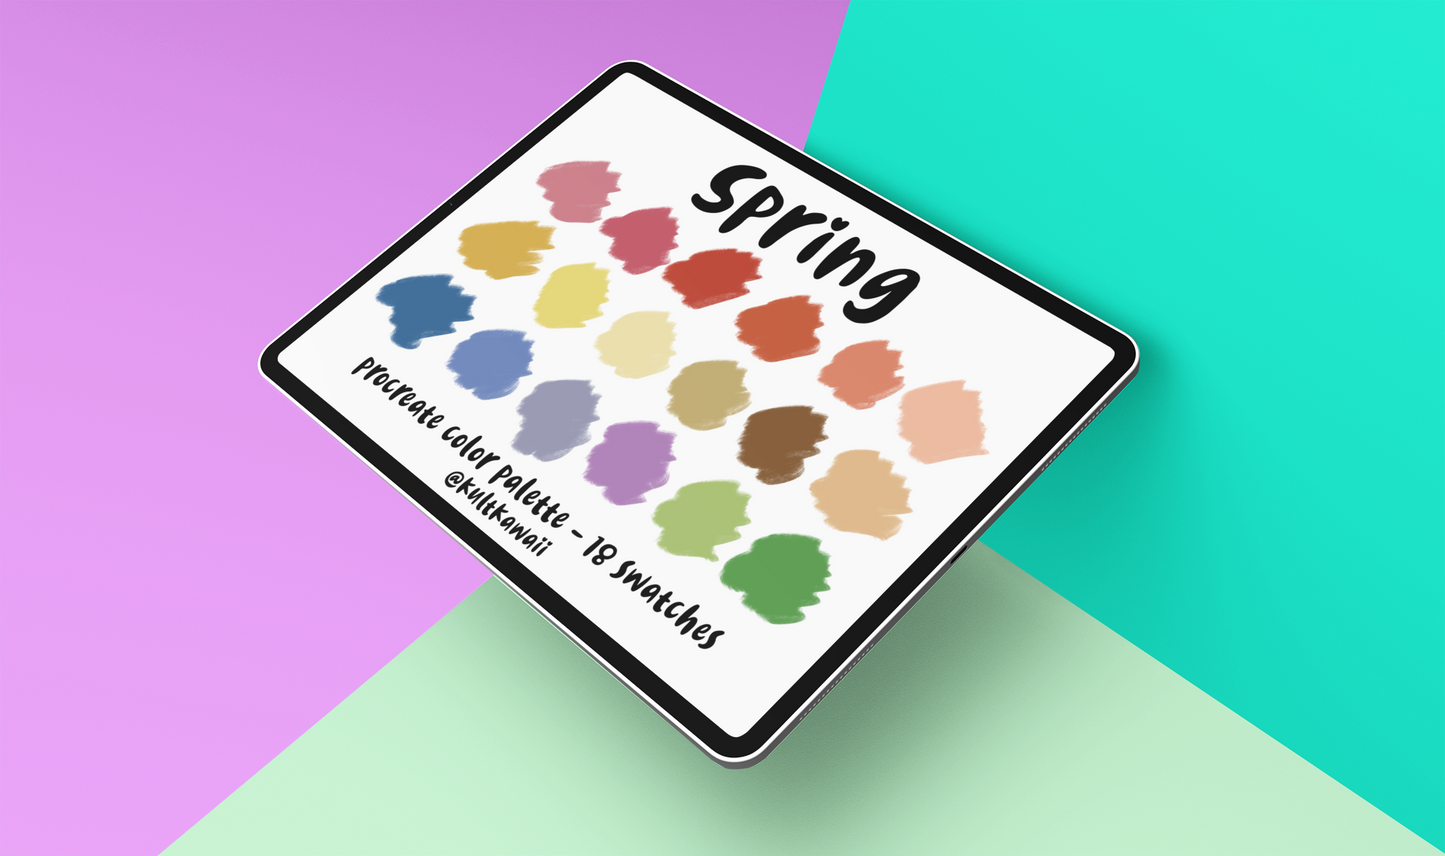 Spring Color Palette